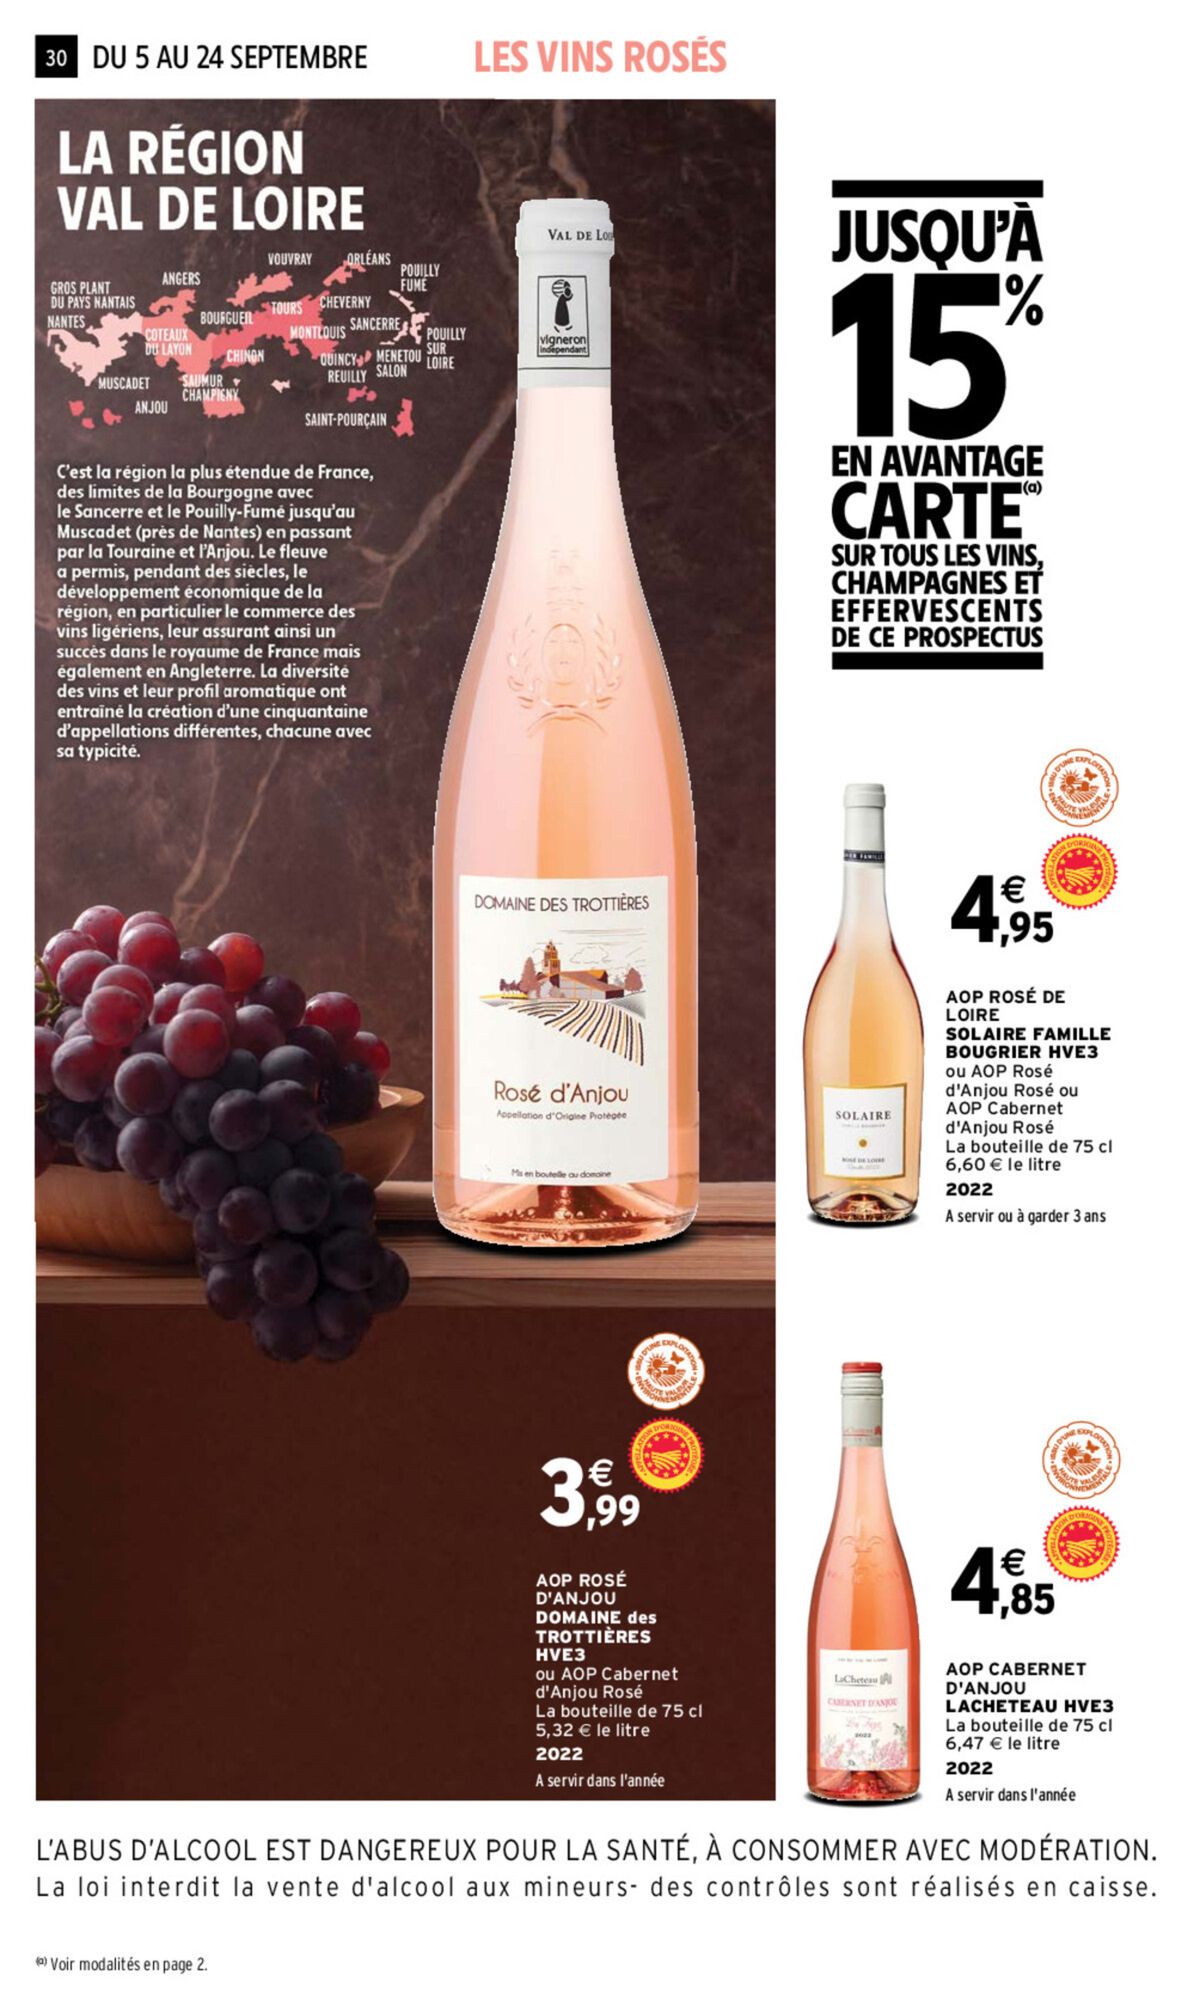 Catalogue Foire aux vins, page 00025